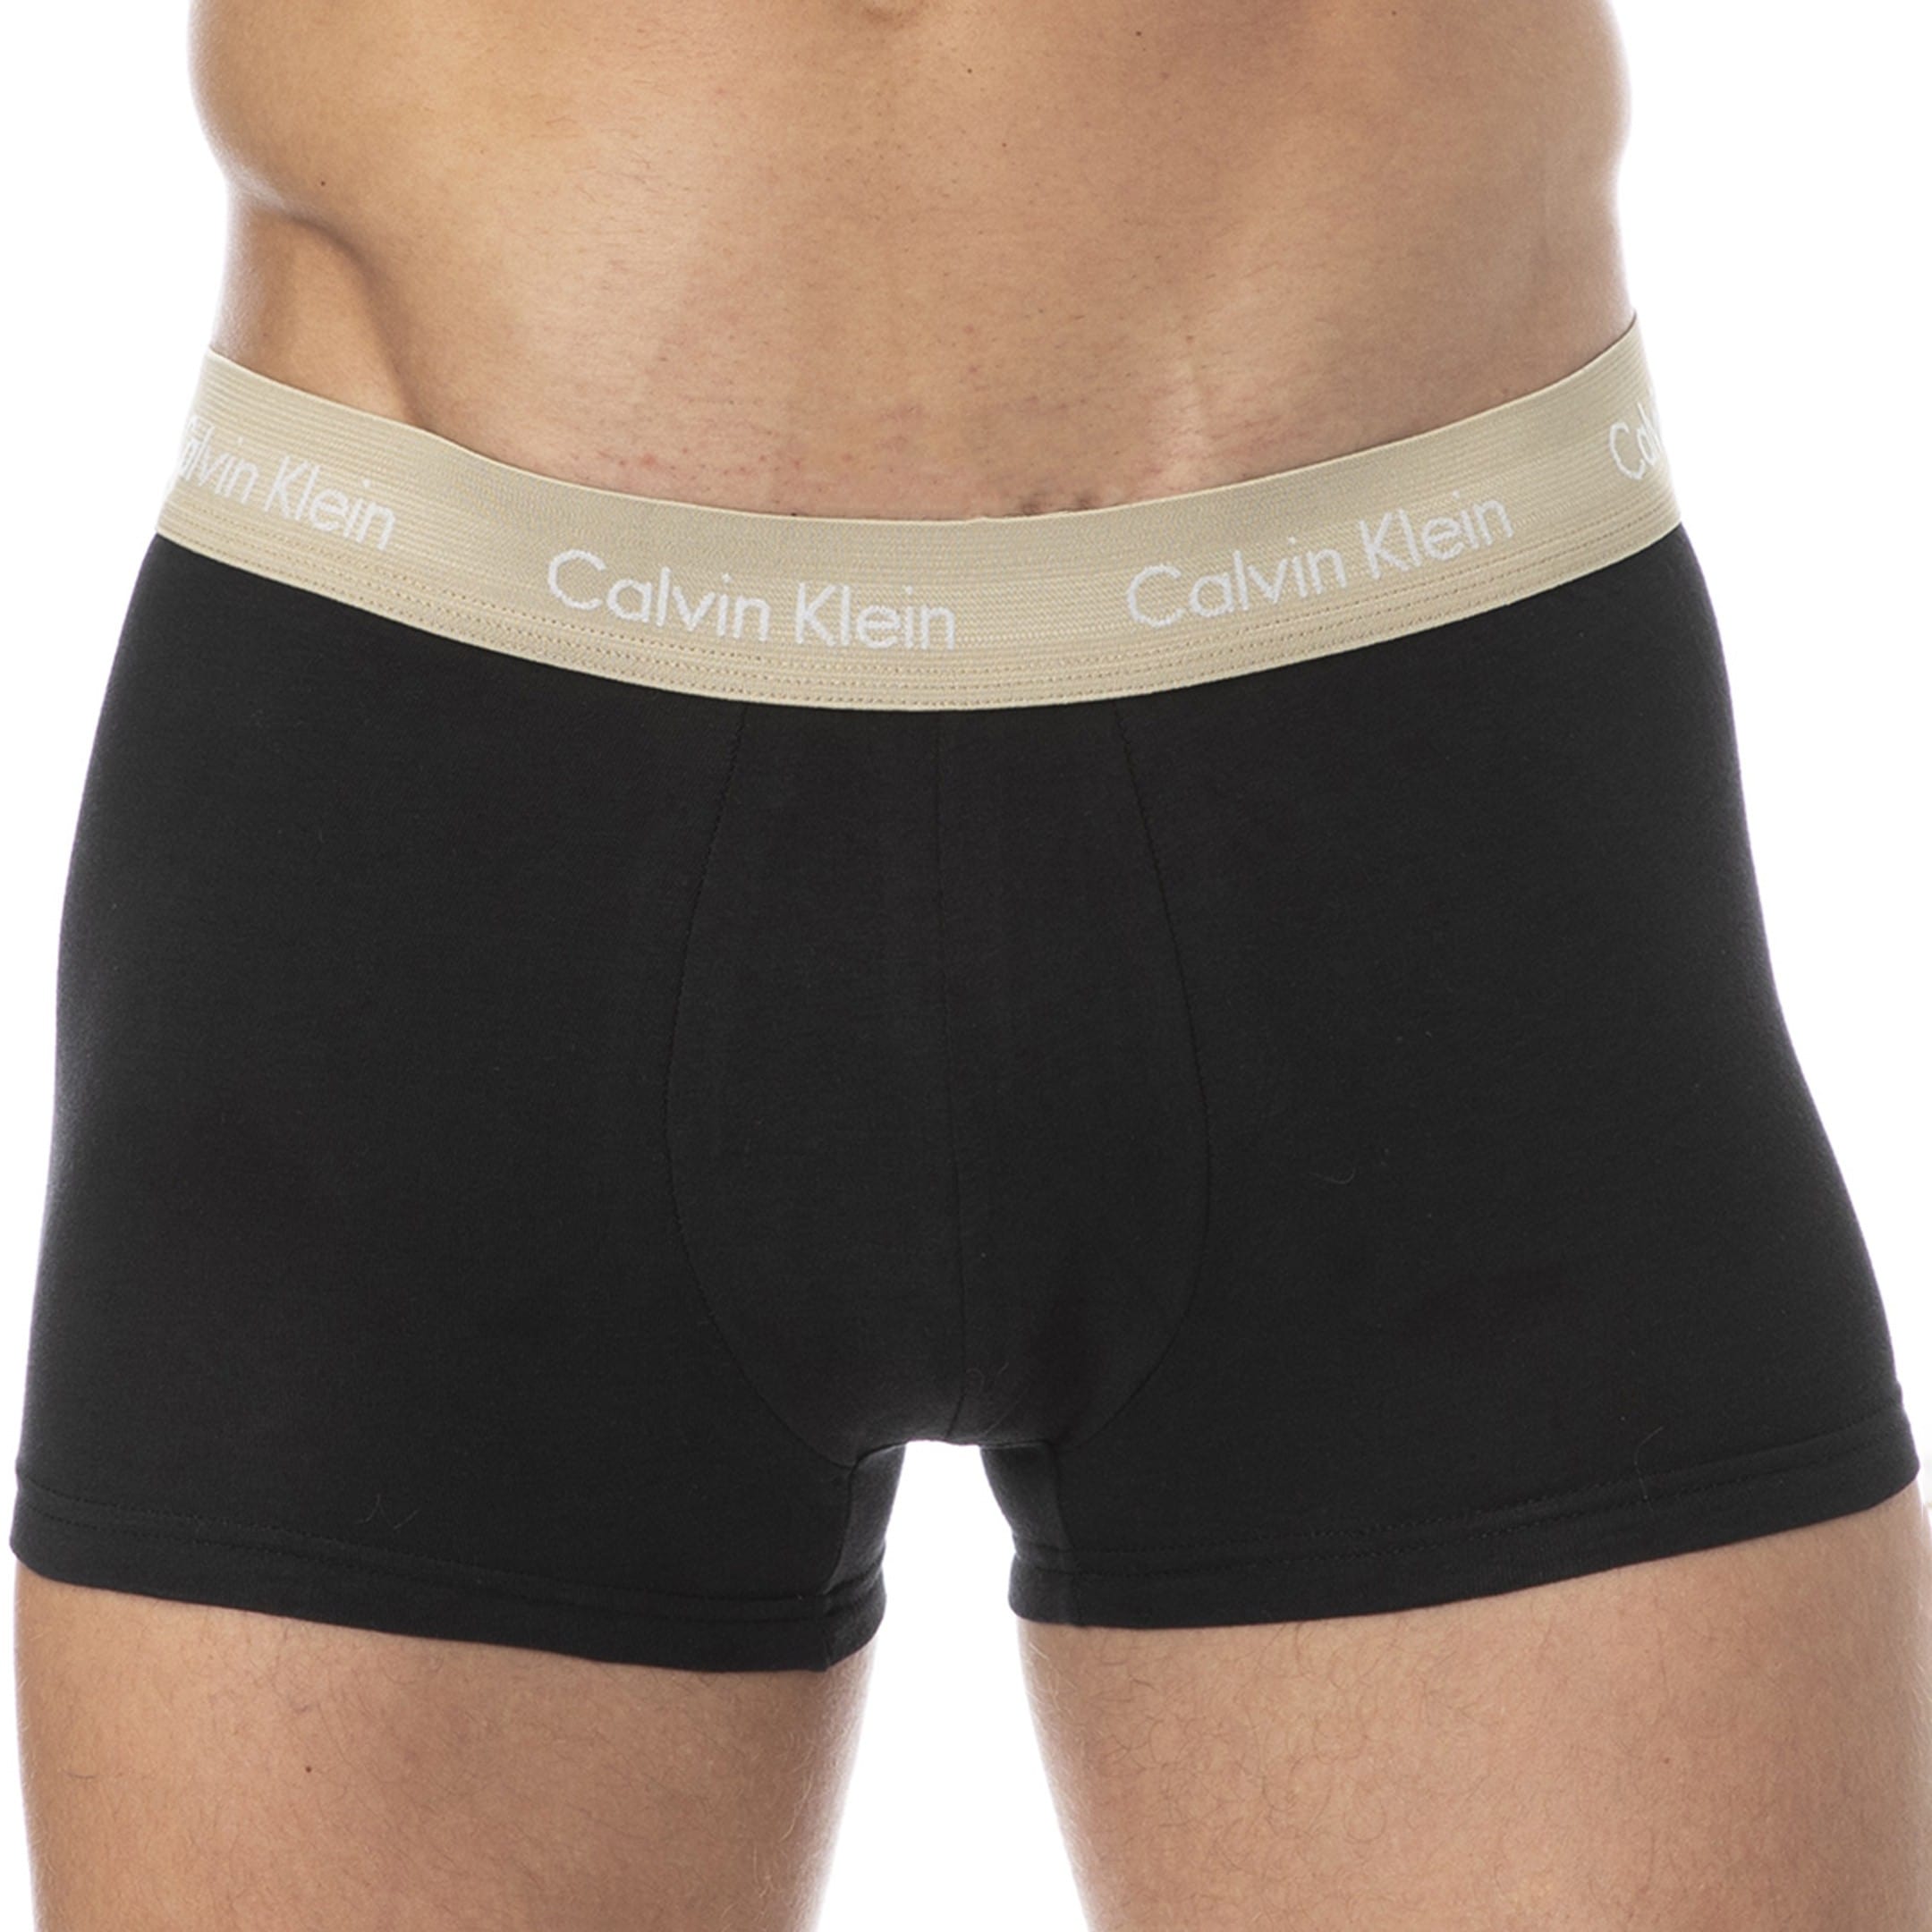 impliciet token Sterkte Calvin Klein 3-Pack Cotton Stretch Boxer Briefs - Black | INDERWEAR